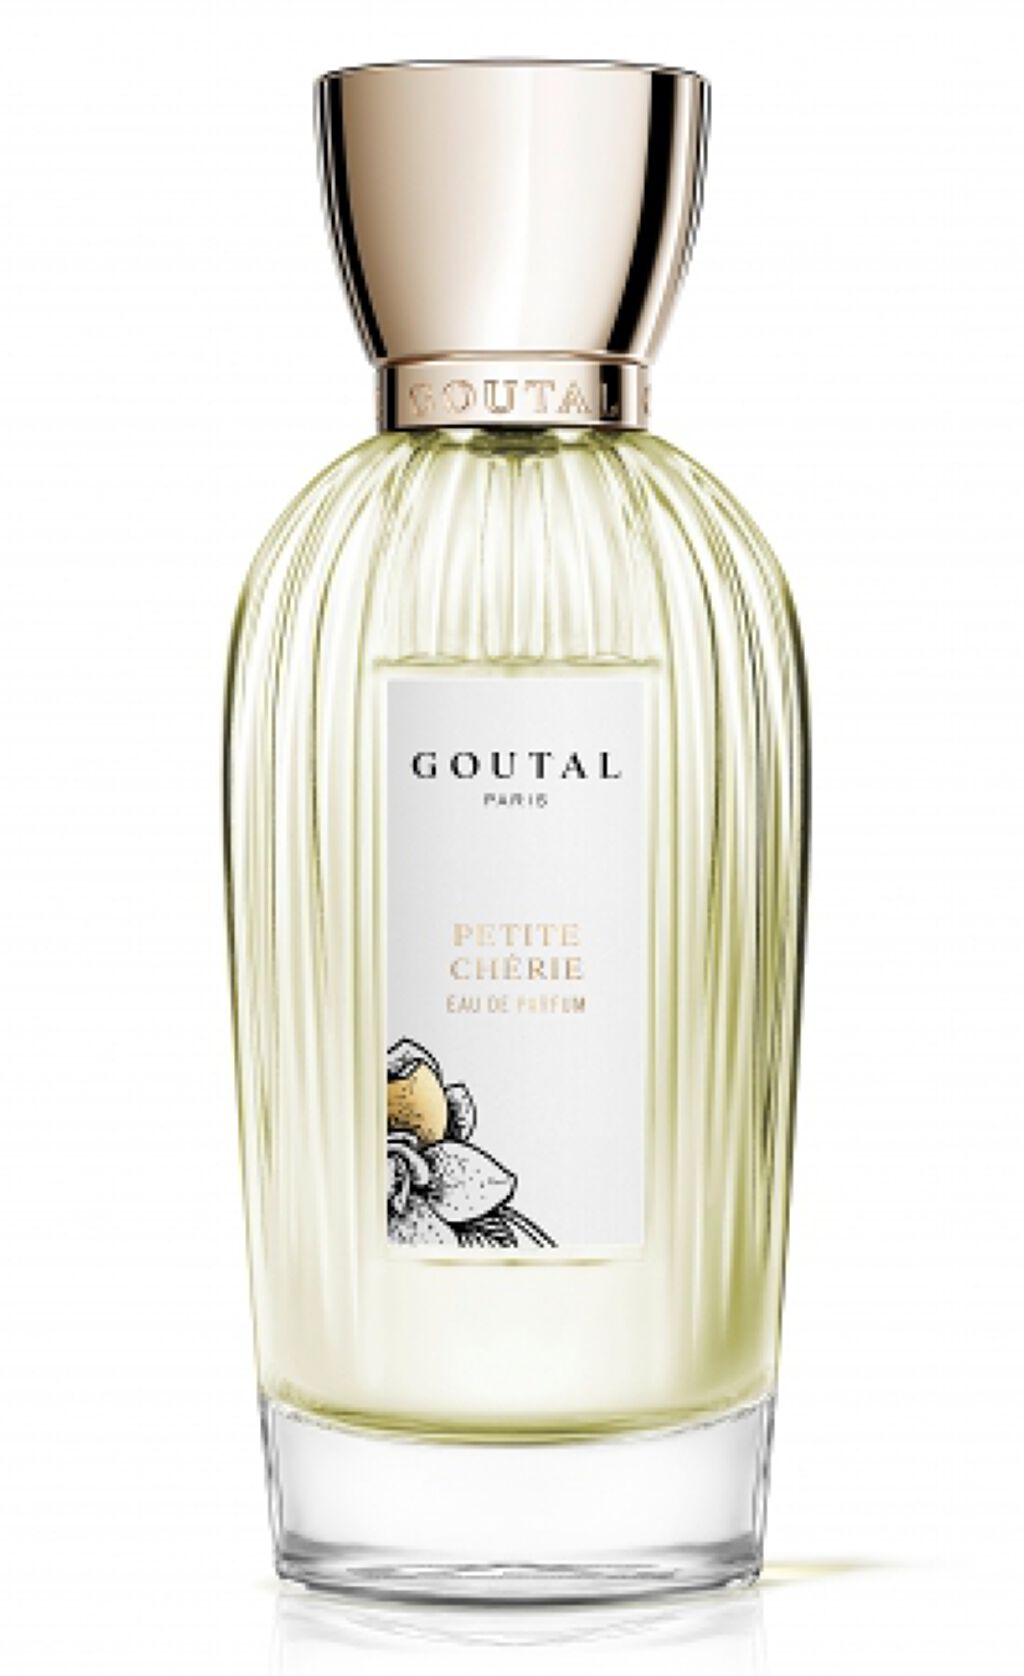 グタール(GOUTAL)の香水6選 | 人気商品から新作アイテムまで全種類の口コミ・レビューをチェック！ | LIPS